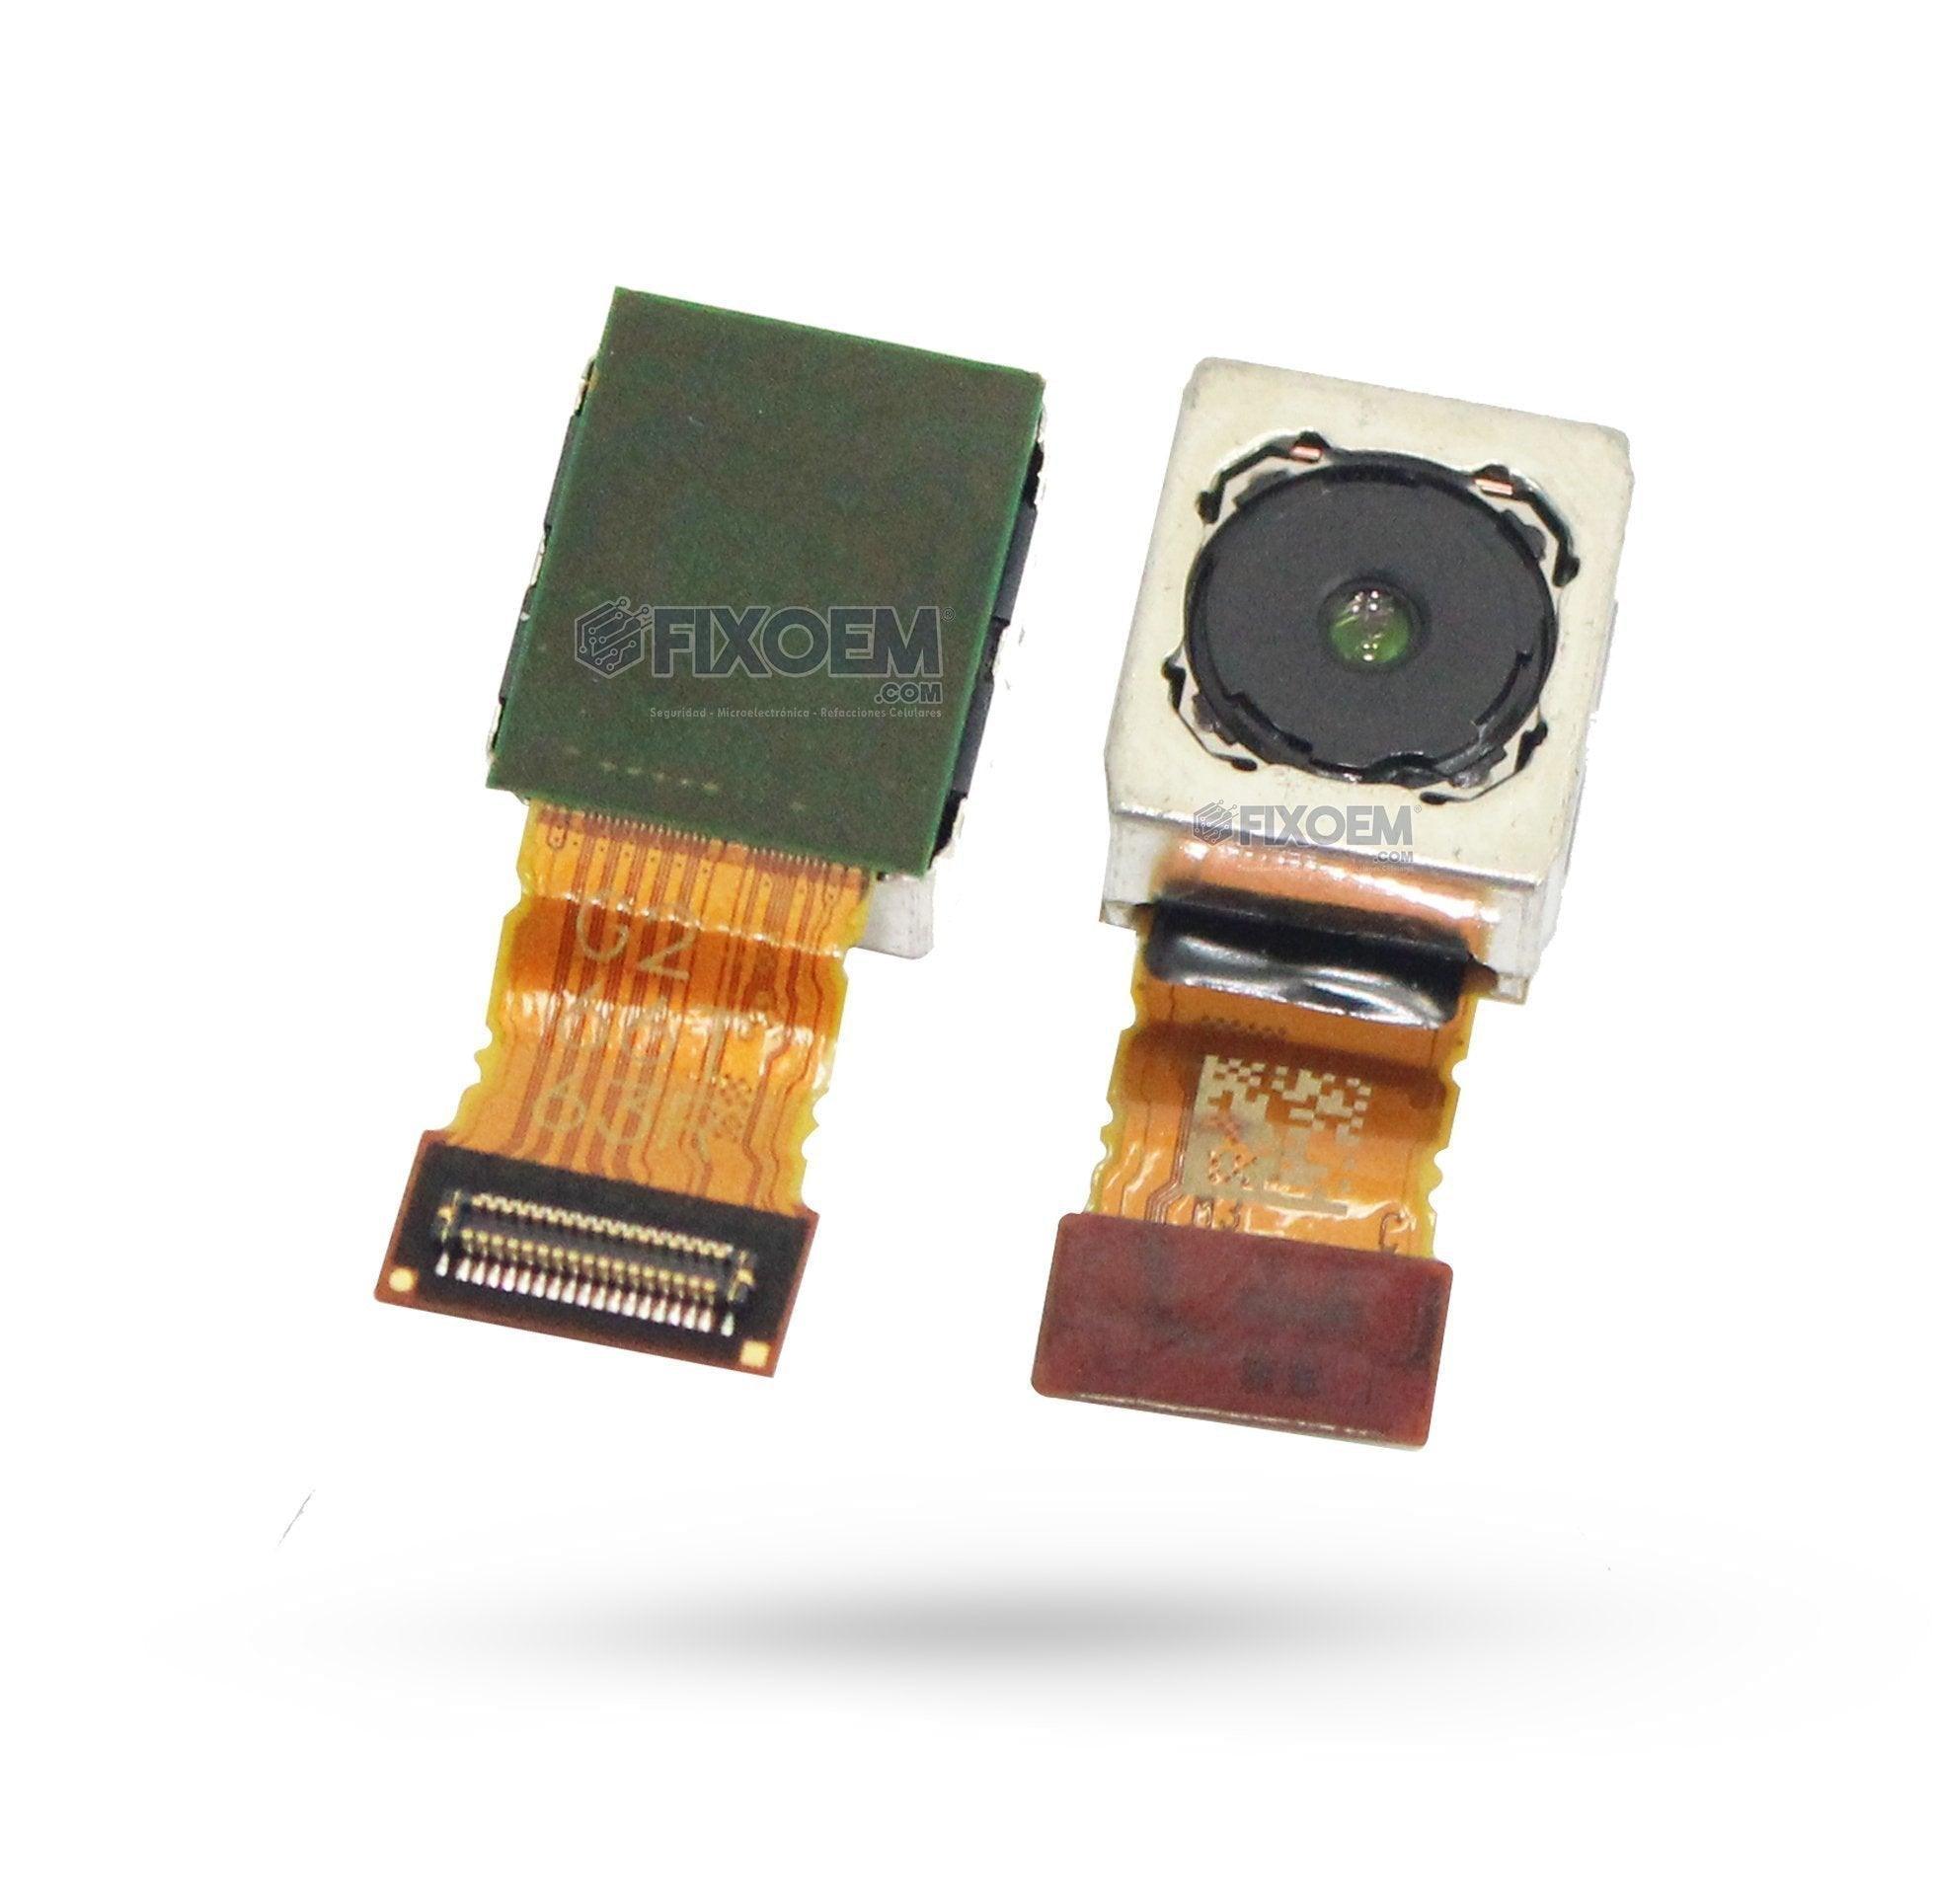 Camara Trasera Sony Xa2 Ultra F3213 a solo $ 300.00 Refaccion y puestos celulares, refurbish y microelectronica.- FixOEM